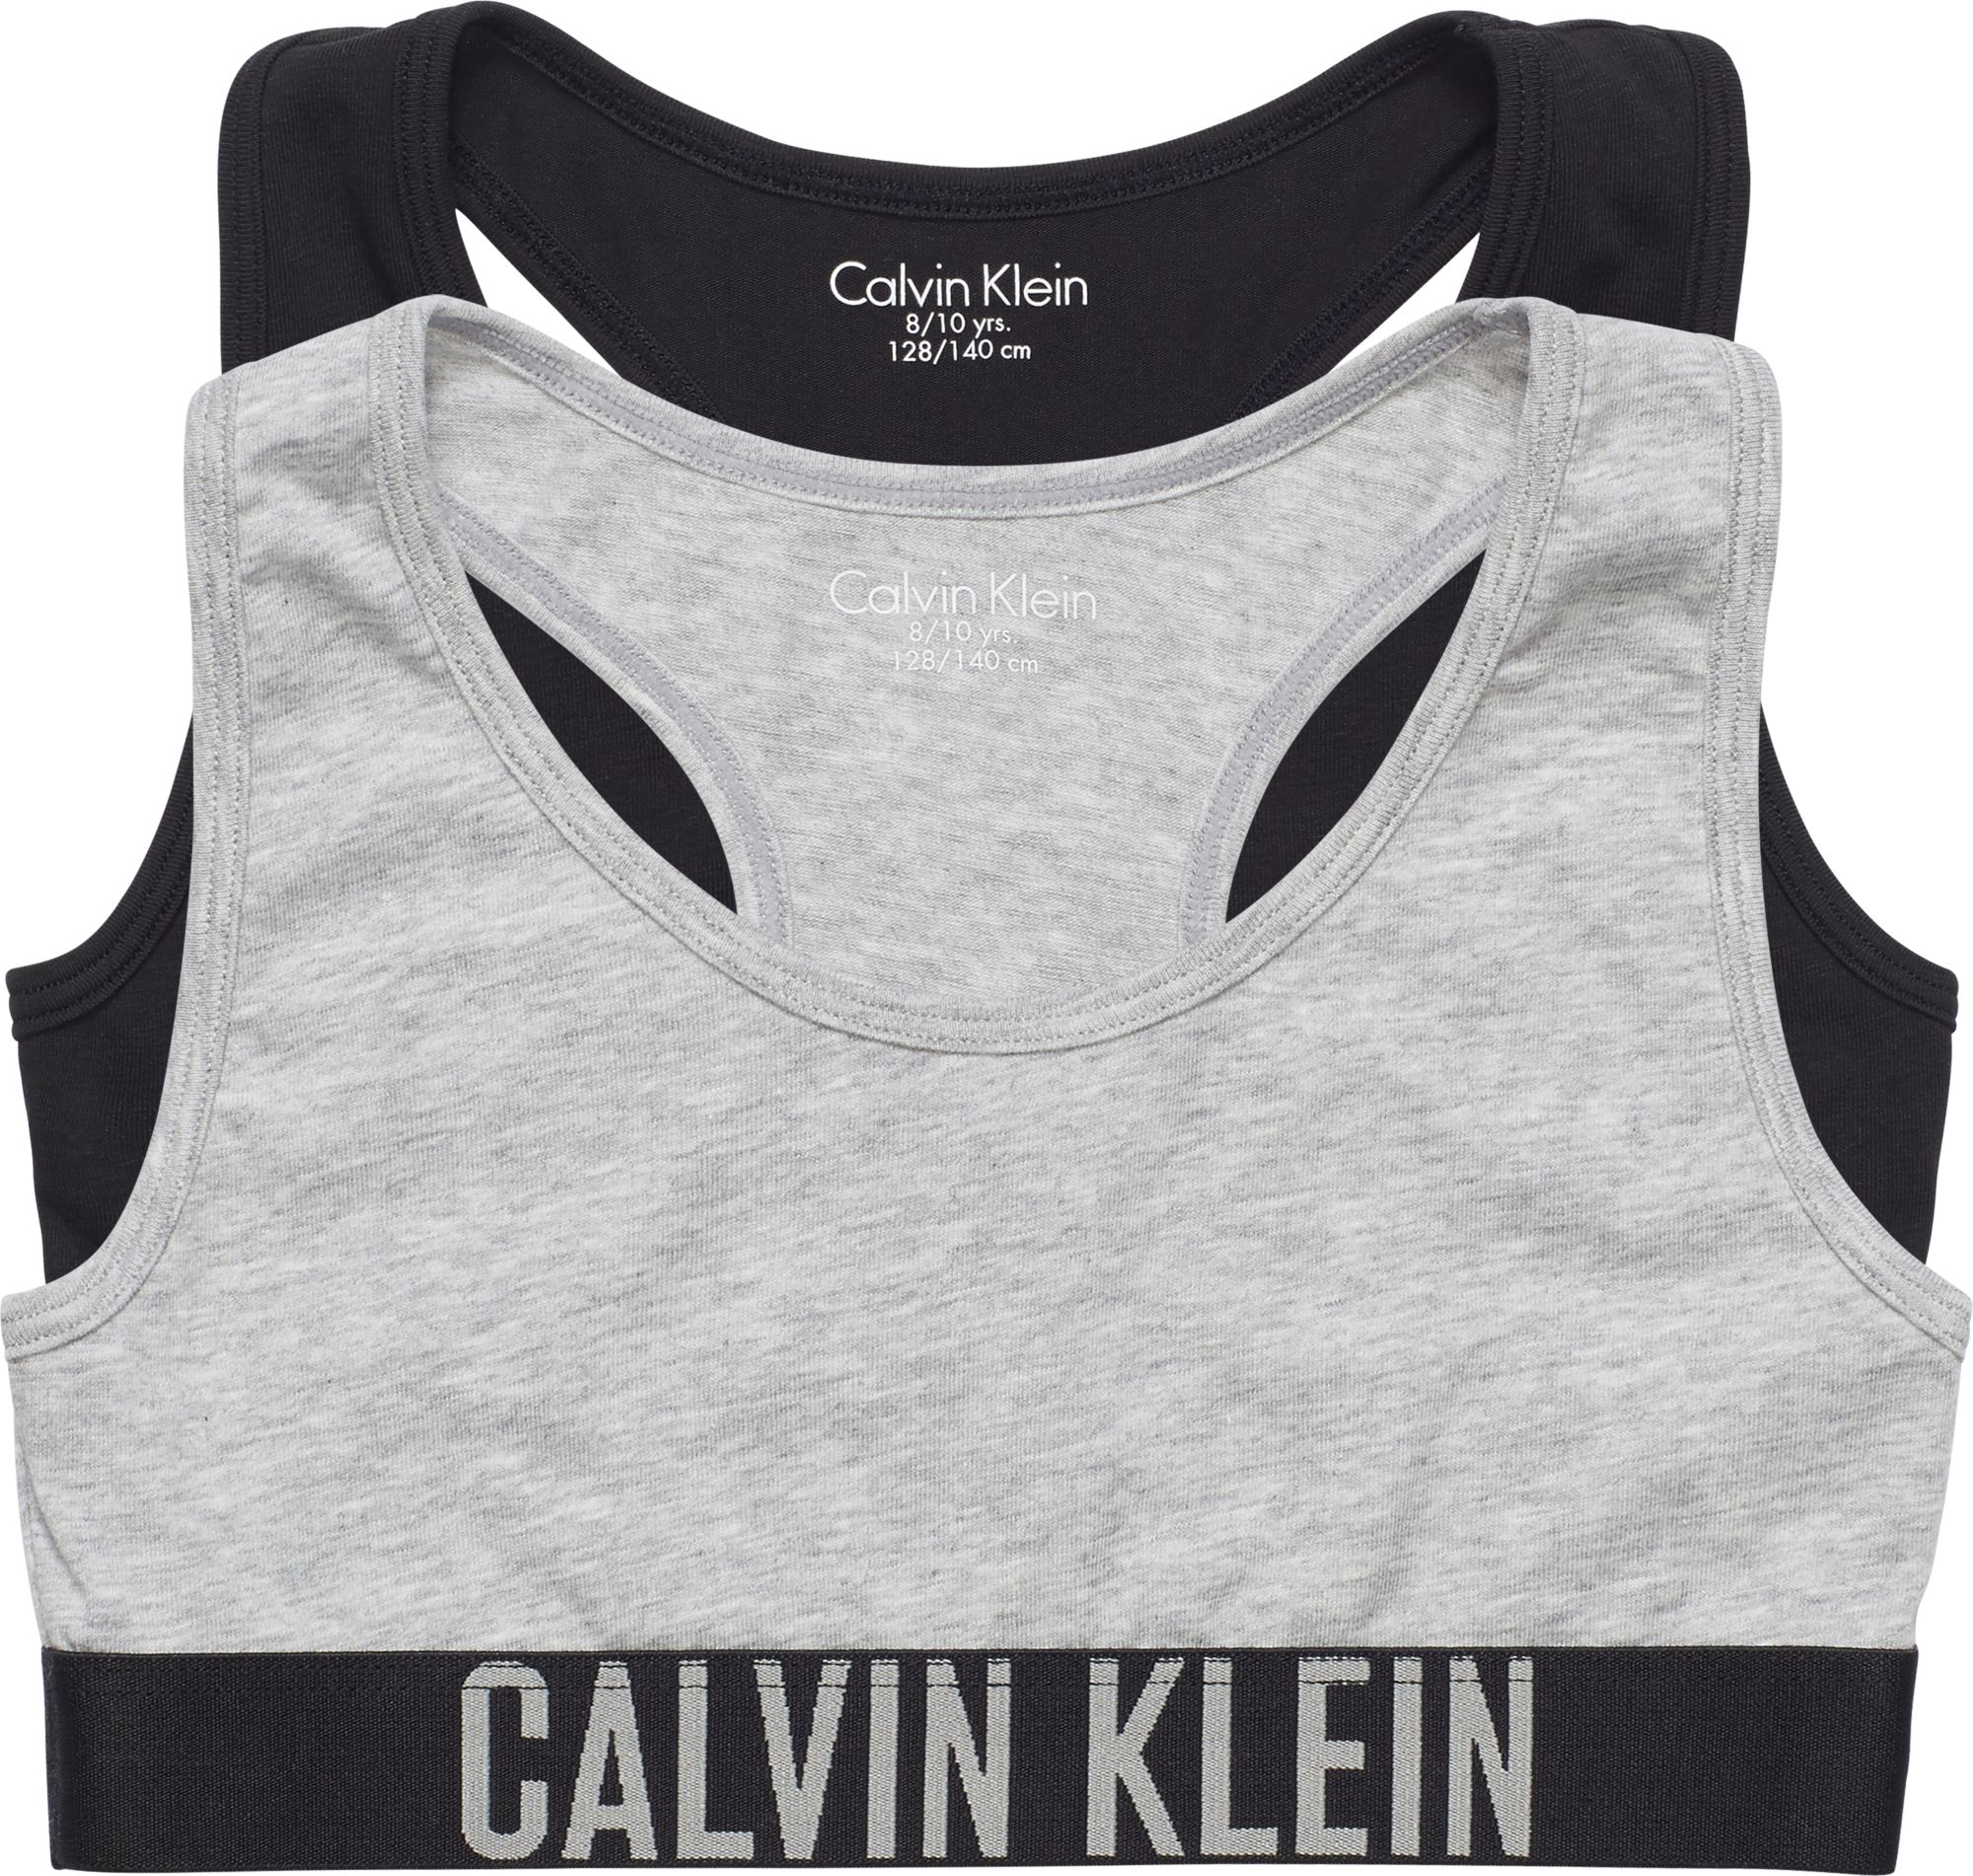 Calvin Klein - CALVIN BRALETTE 2PK - G80G800143